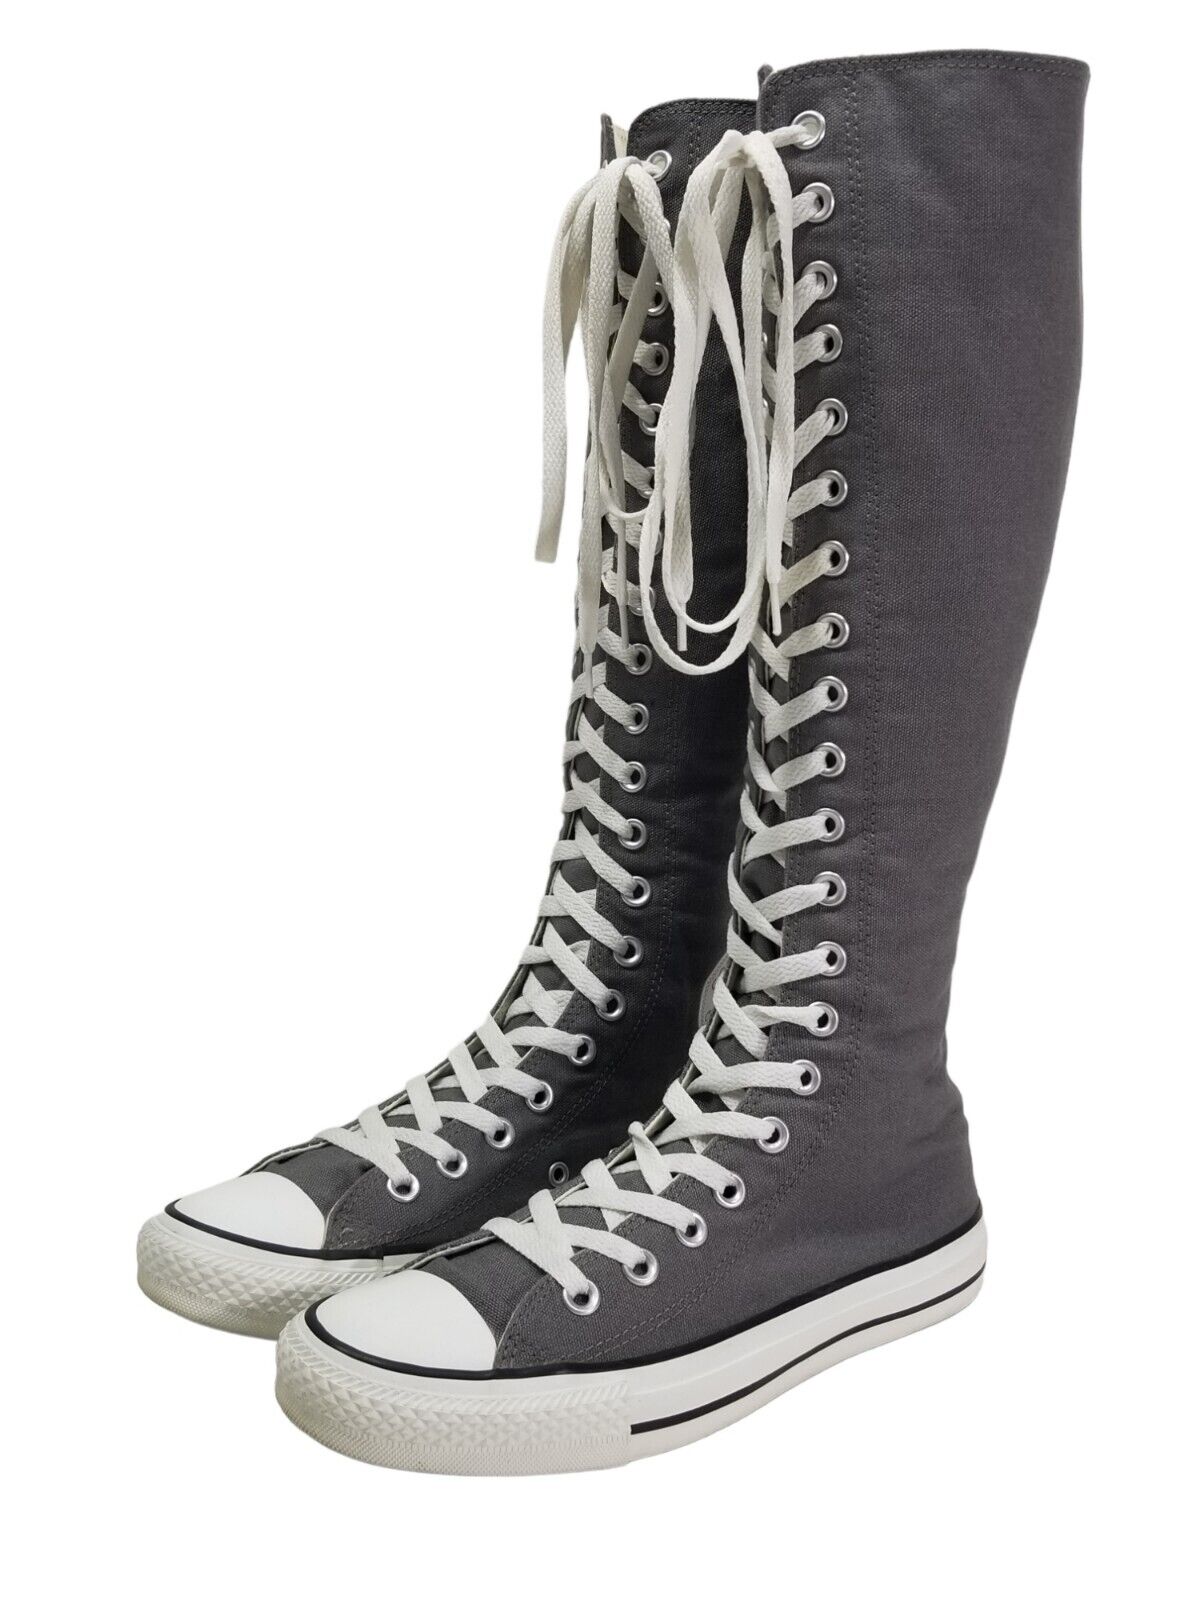 fossiel overschreden dam Converse XXHI All Star Chuck Taylor Gray Knee High Womens US Size 7.5  Grunge | eBay